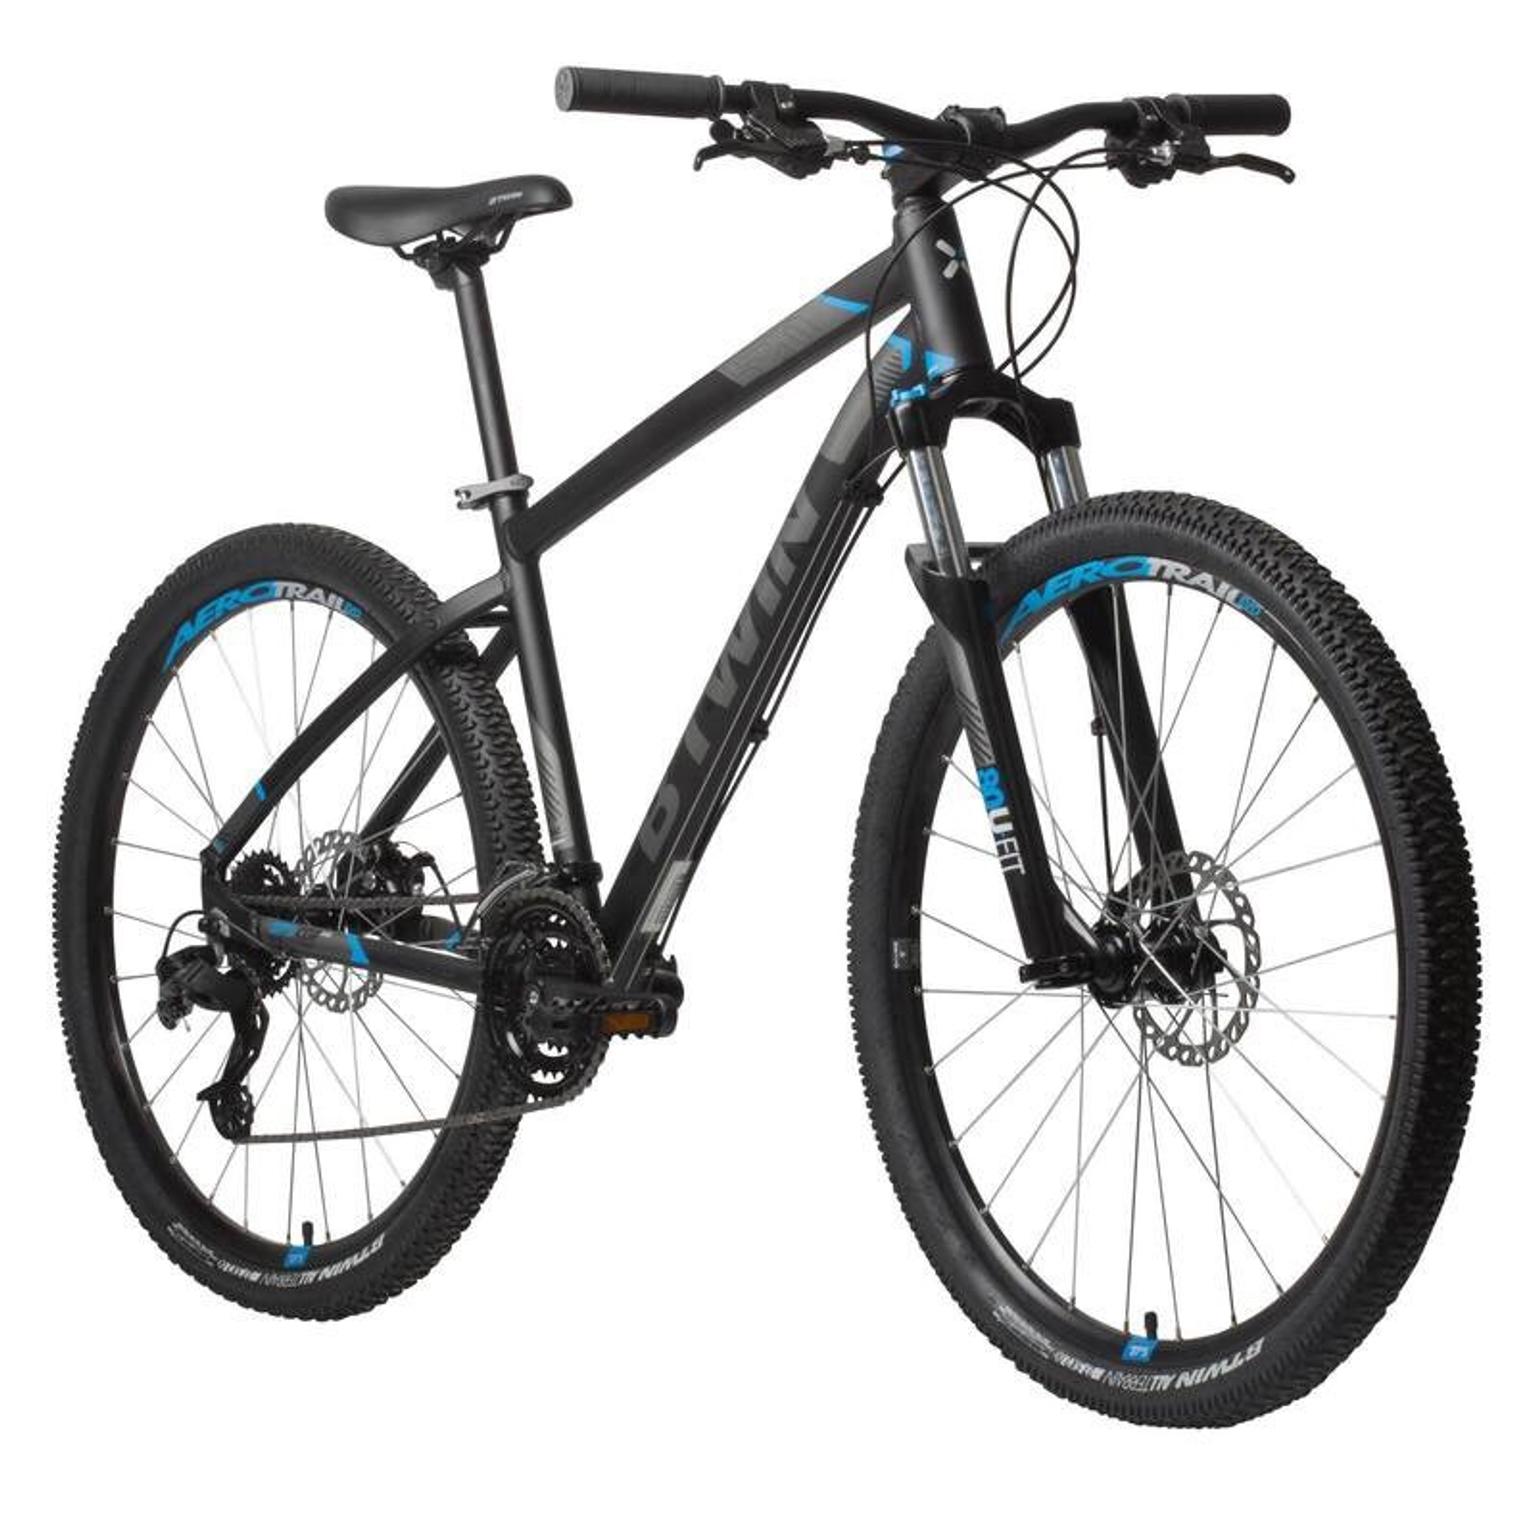 rockrider 520 27.5 mountain bike